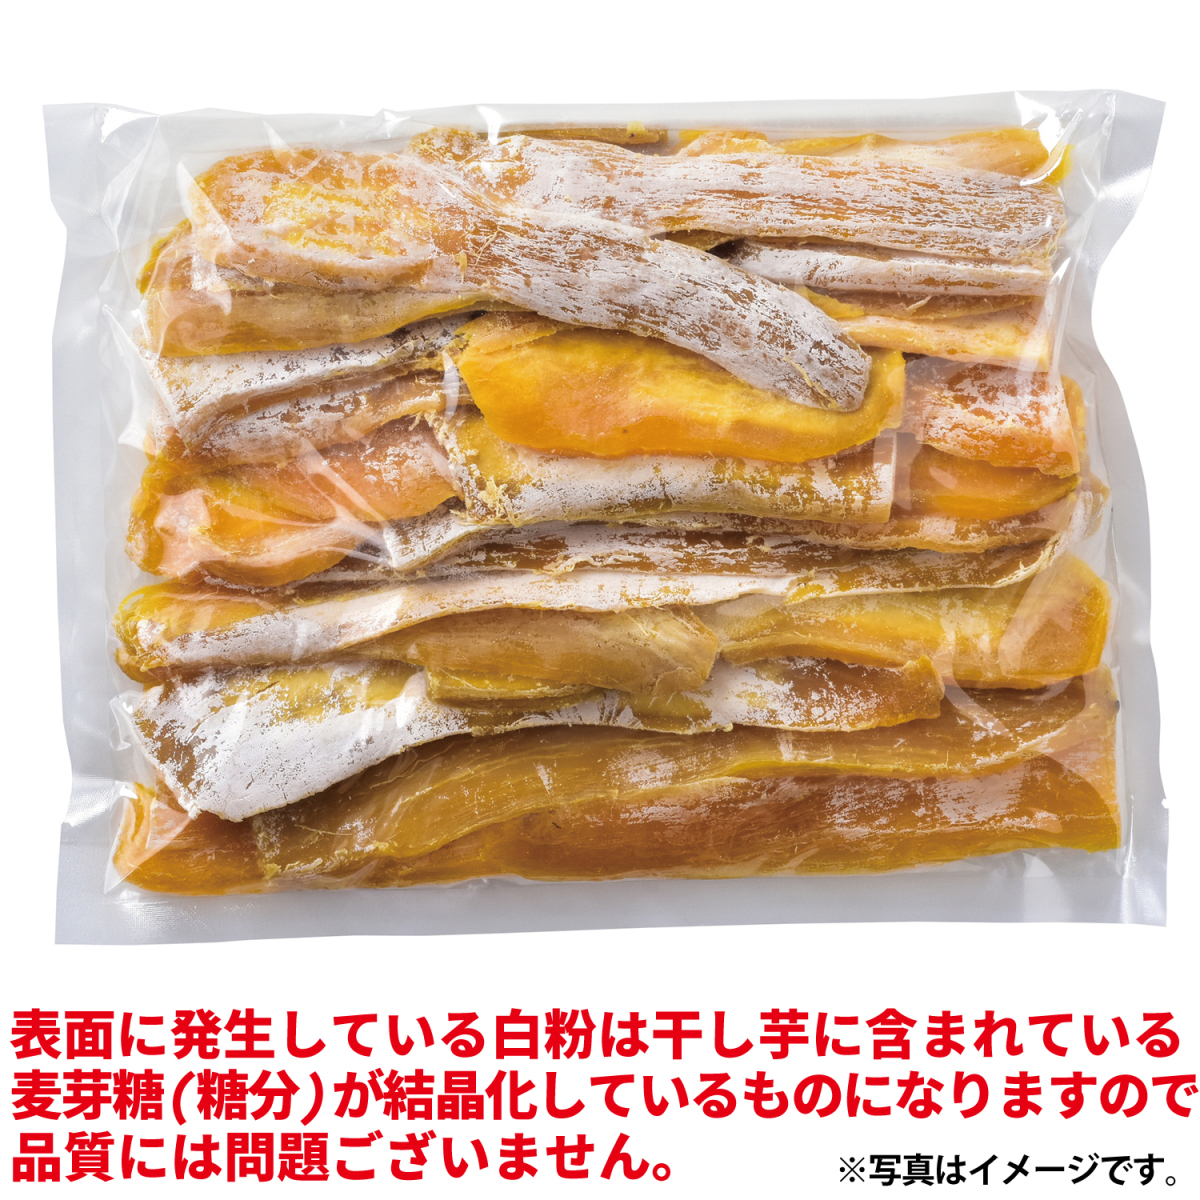 . рисовое поле магазин сушеный картофел нестандартный товар Ibaraki префектура производство [ есть перевод ....500g×1 пакет ] высушенный .. сухой клубень местного производства 